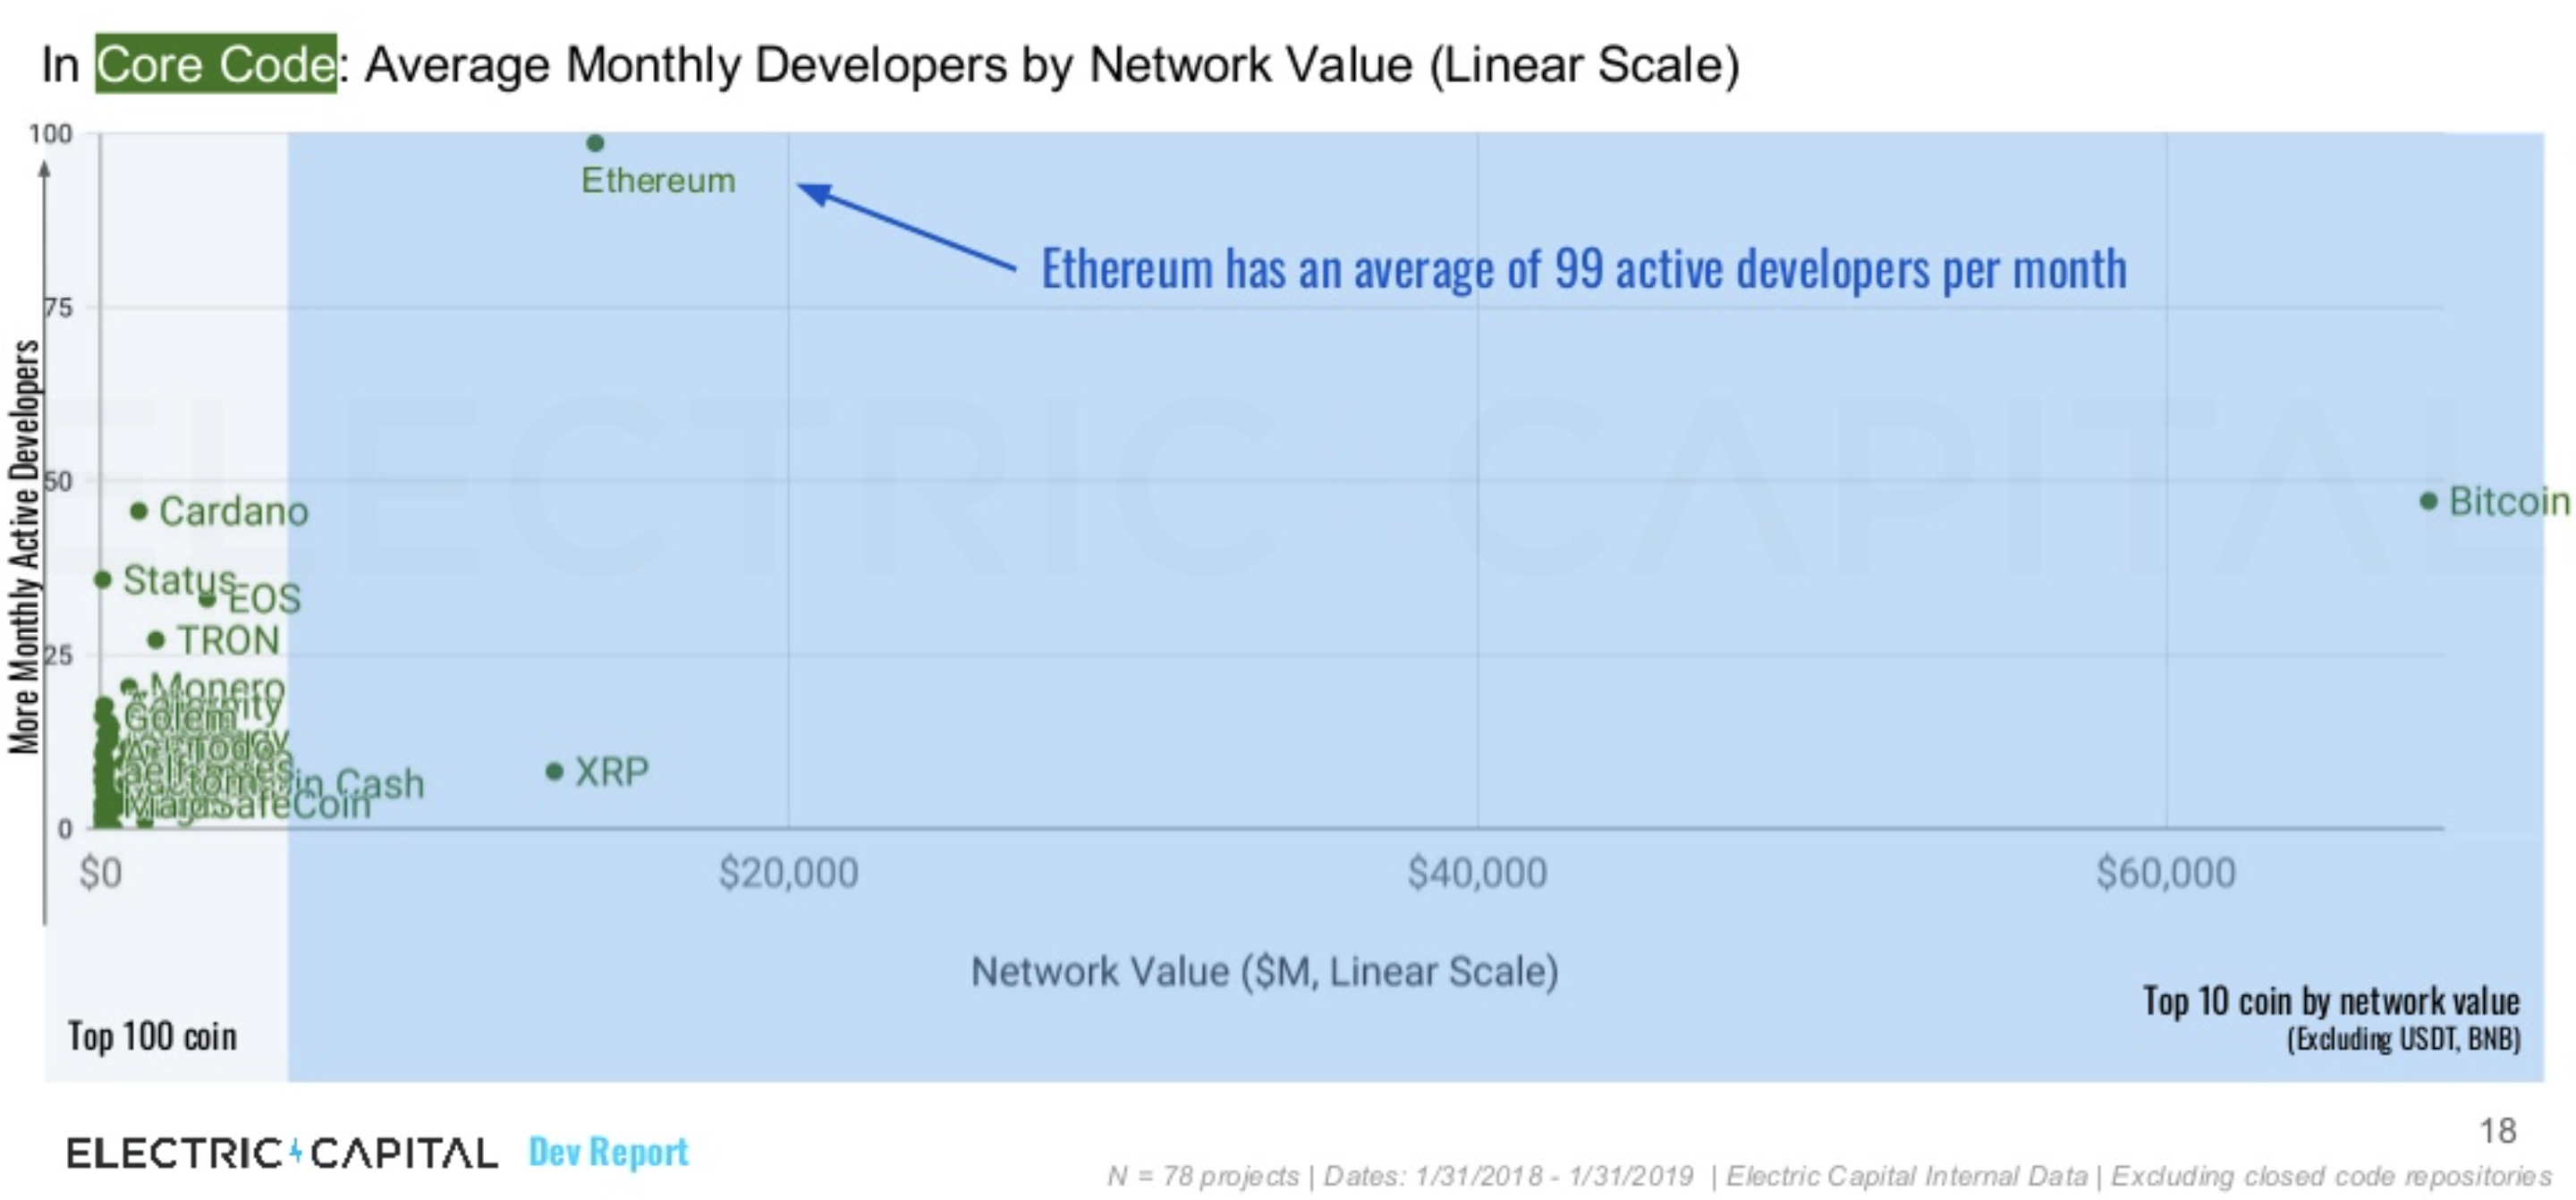 公链开发哪家最活跃？ETH登顶，核心开发人数为比特币的2倍